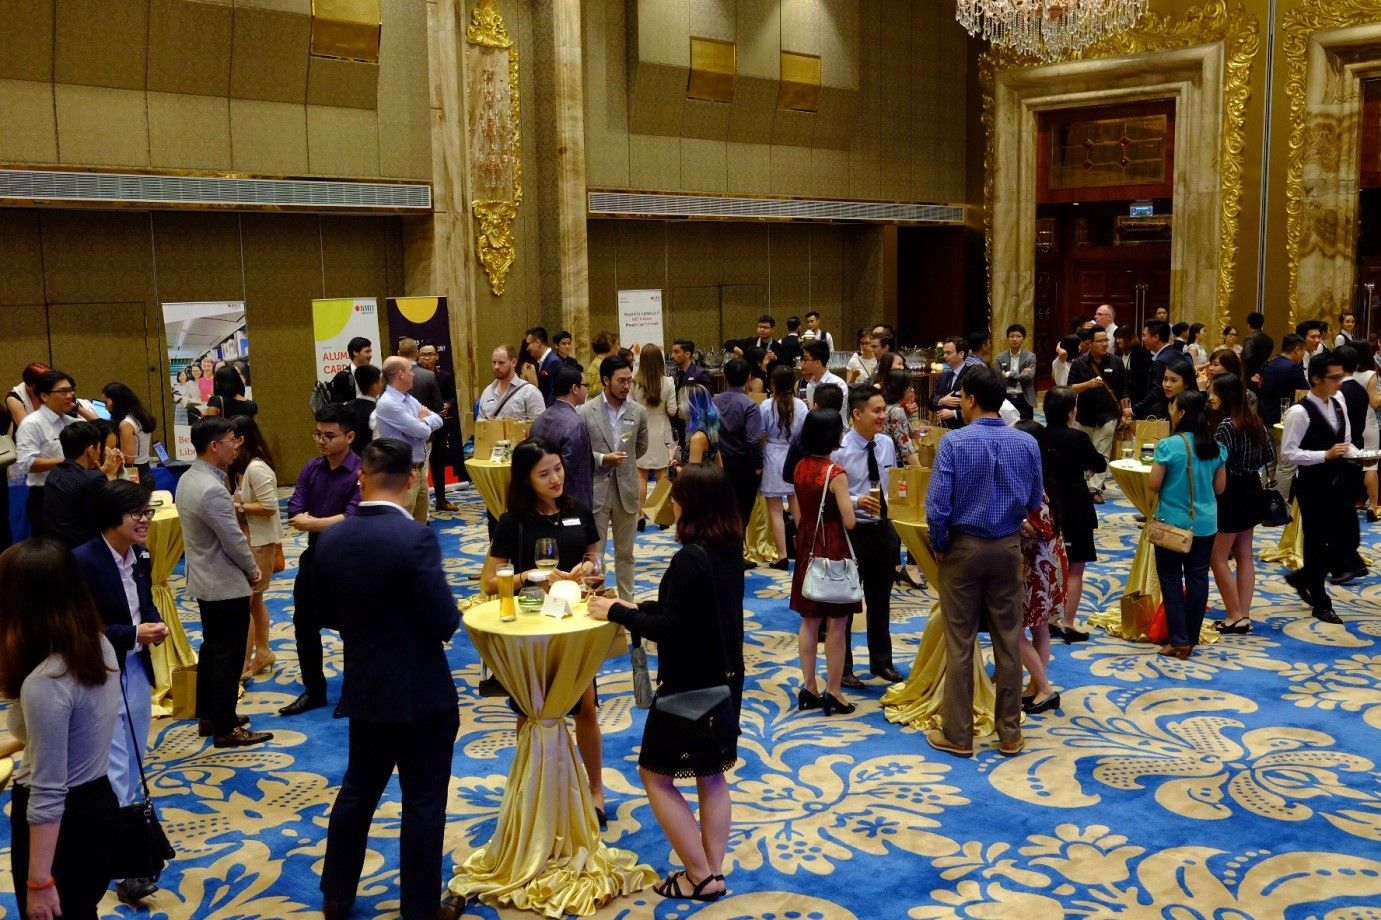 Hơn 200 cựu sinh viên, đại diện doanh nghiệp và cán bộ giảng viên trường đã tụ họp tại khách sạn Reverie ở TP. Hồ Chí Minh trong lễ ra mắt Chi hội Cựu sinh viên ngành Kinh doanh tại khu vực này.